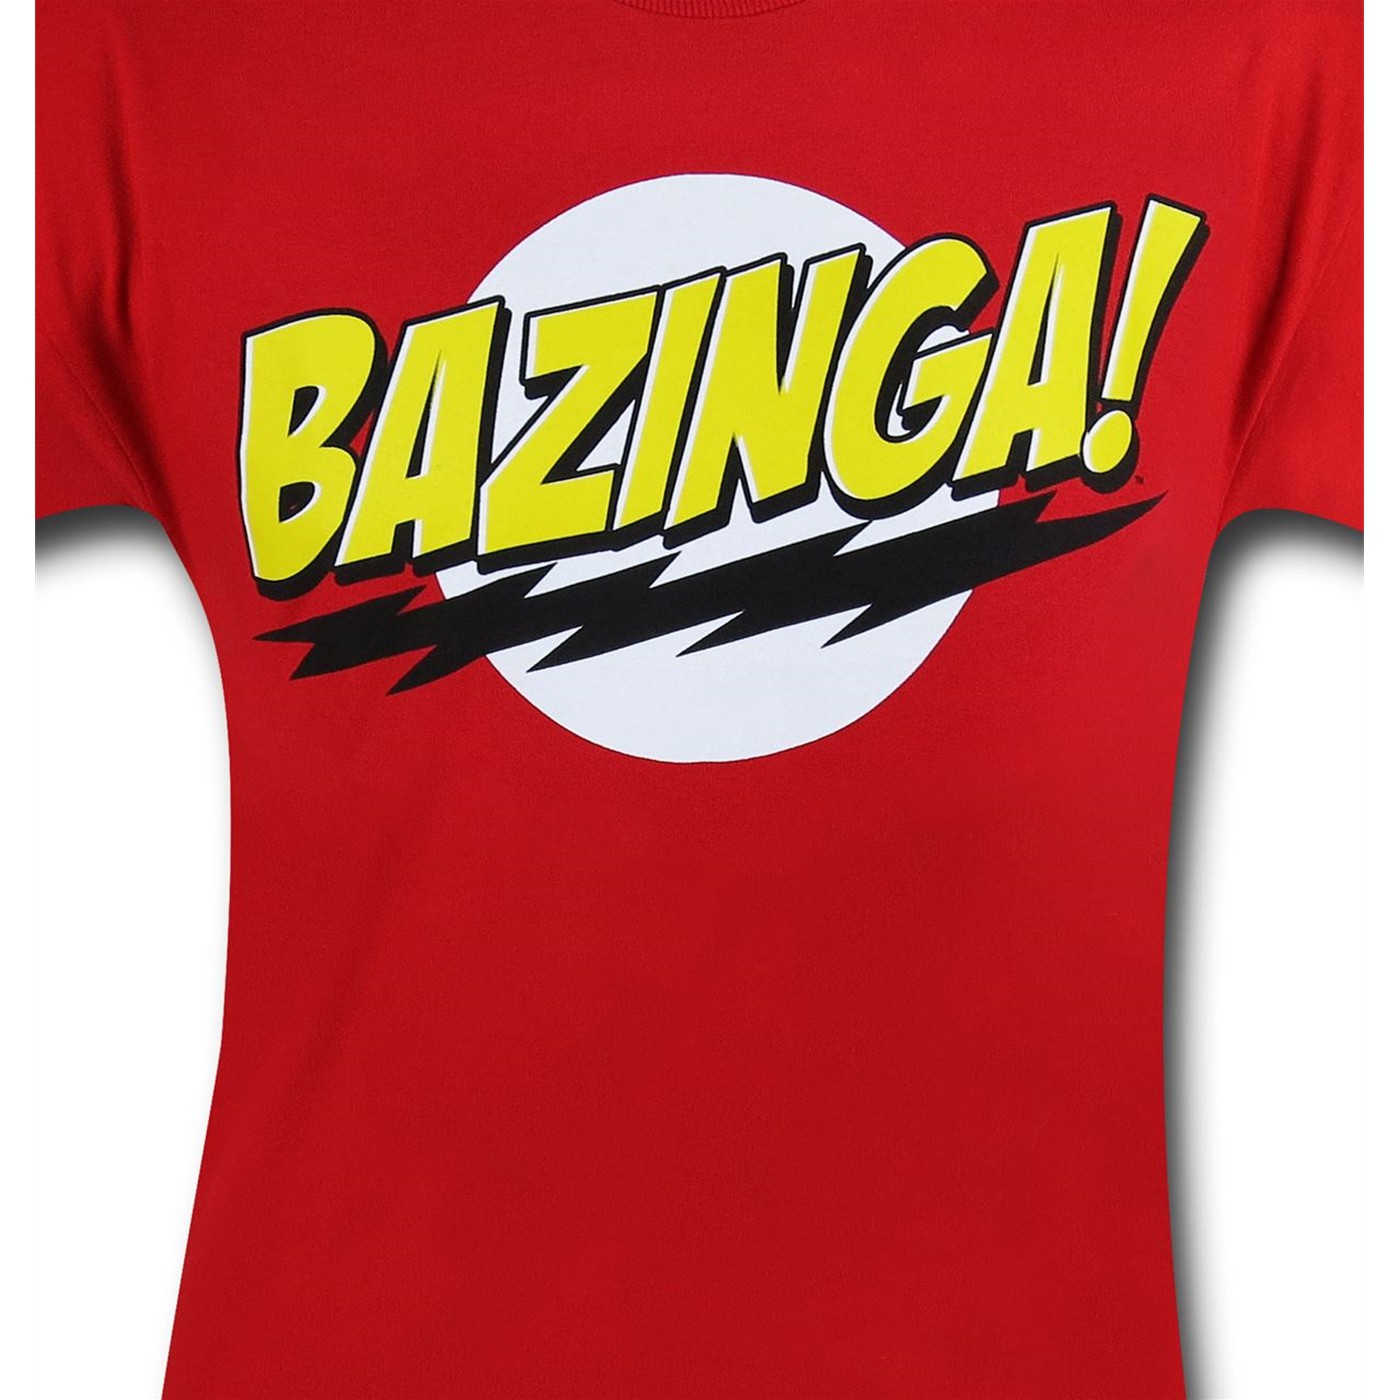 bazinga shirt